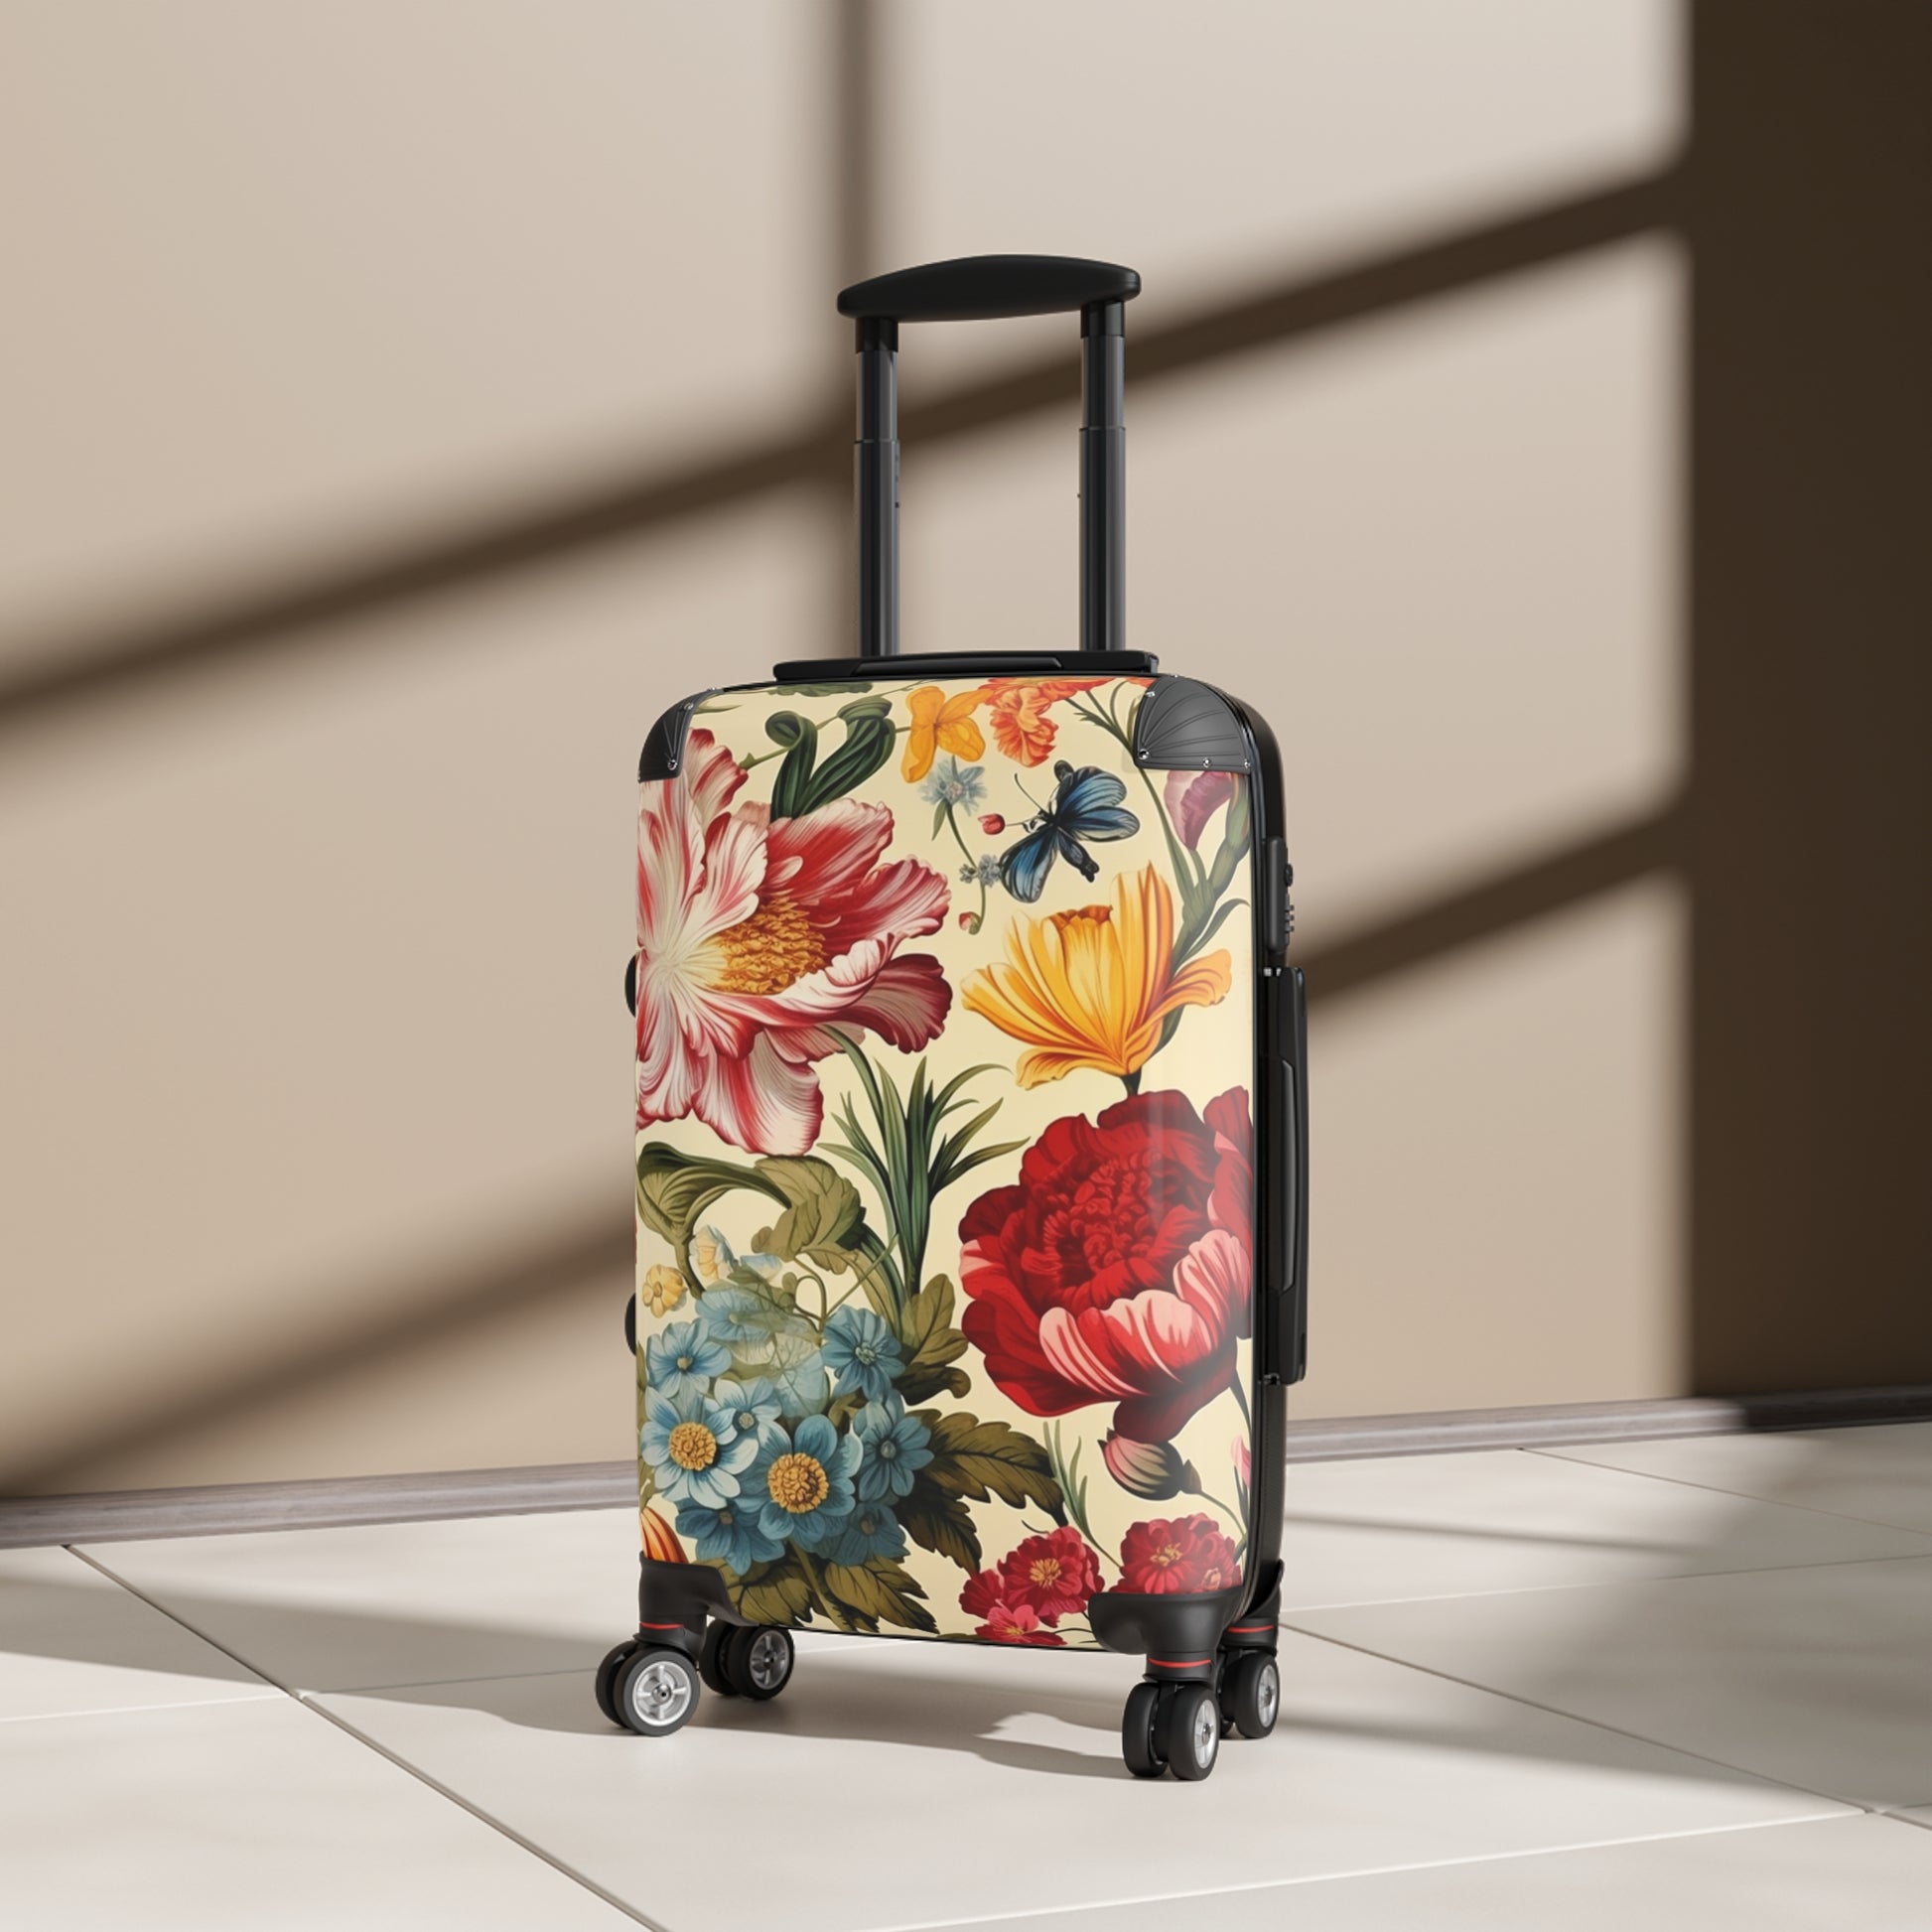 classic floral travel case, 100 vintage floral prints